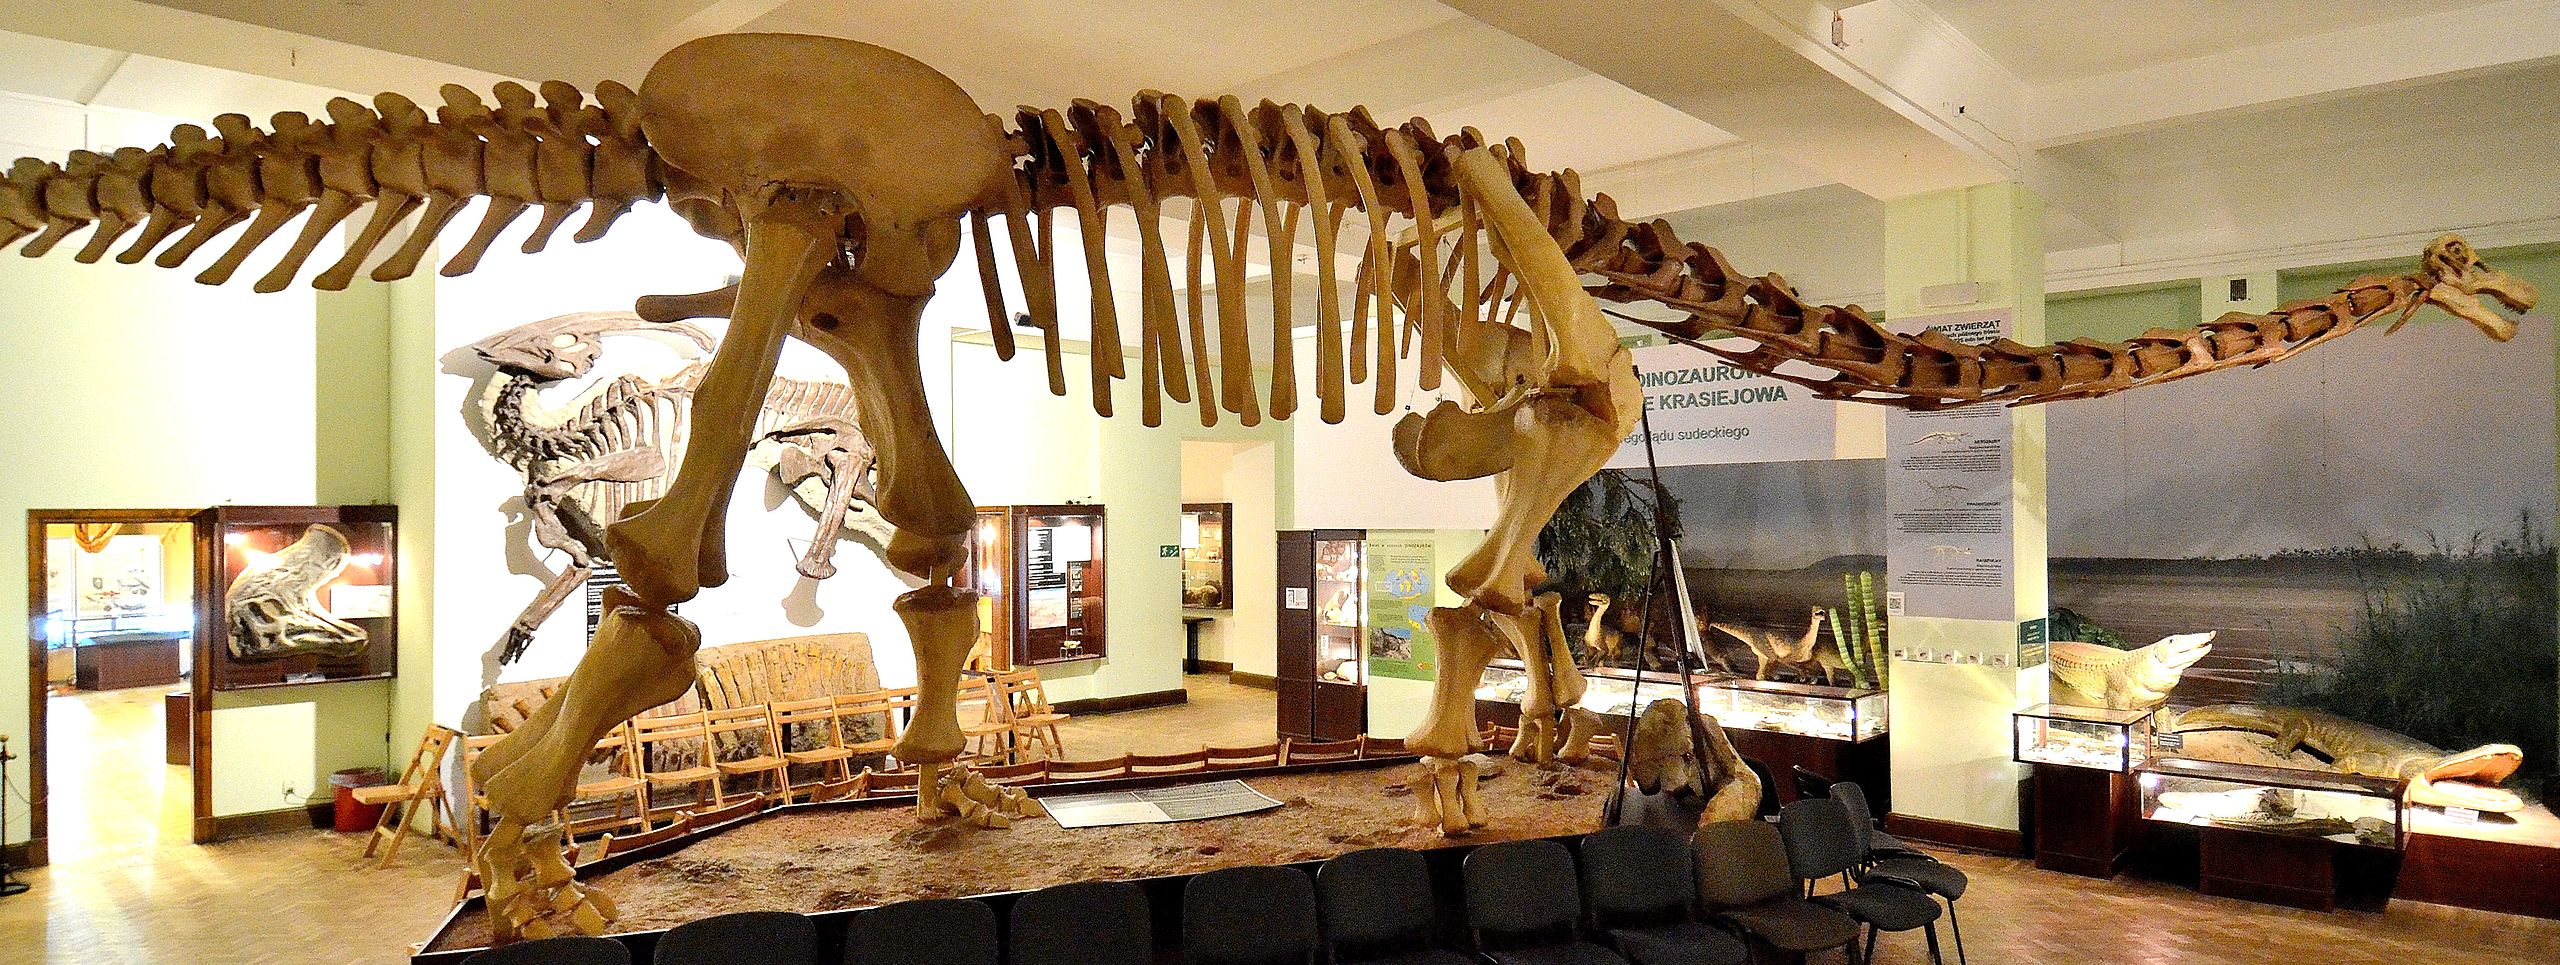 Rekonstrukce kostry opistocélikaudie v expozici Muzea evoluce při Polské akademii věd ve Varšavě. Podoba krční části kostry a lebky je pouze hypotetická a rekonstrukce vychází plně z odlitku lebky rodu Nemegtosaurus (který může být se skutečnosti kon